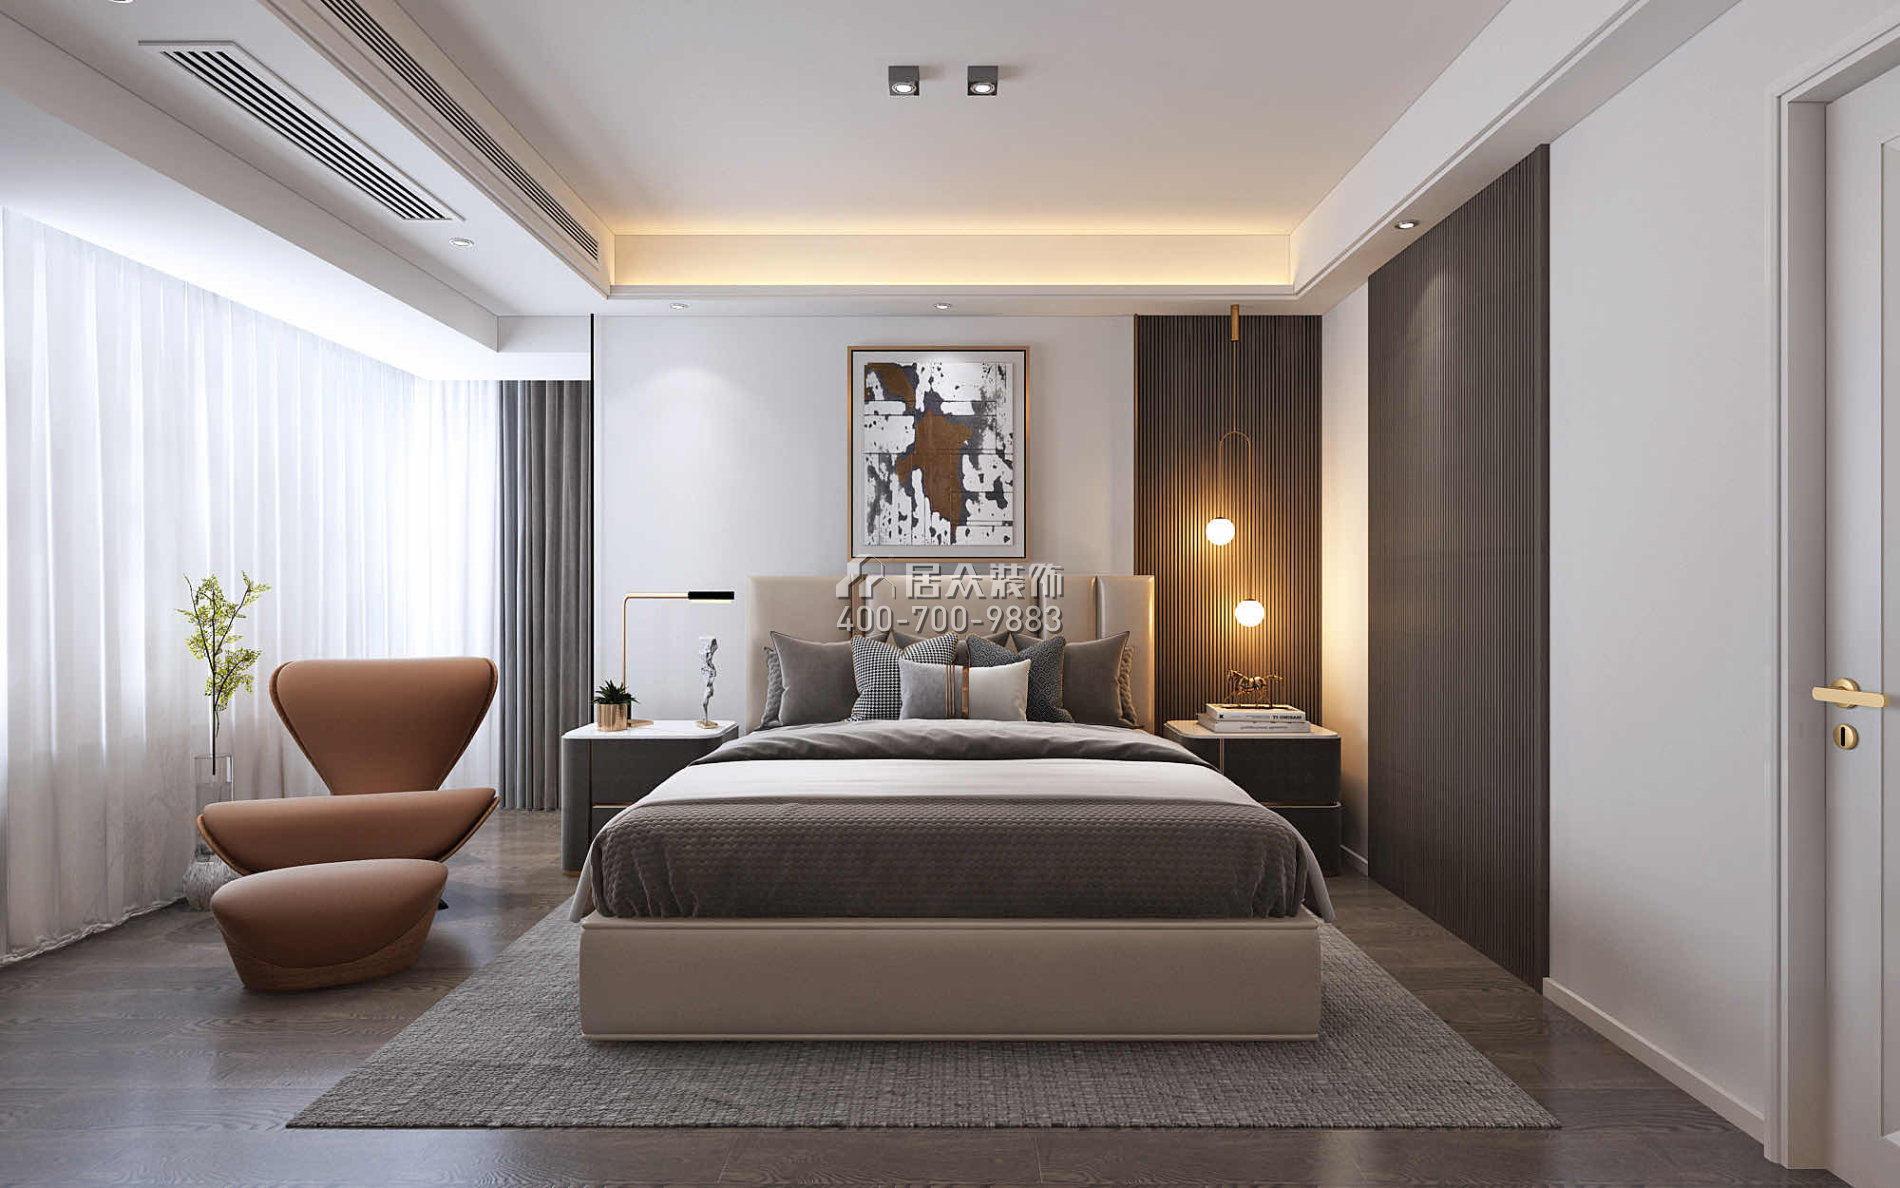 万达湖公馆180平方米现代简约风格平层户型卧室装修效果图